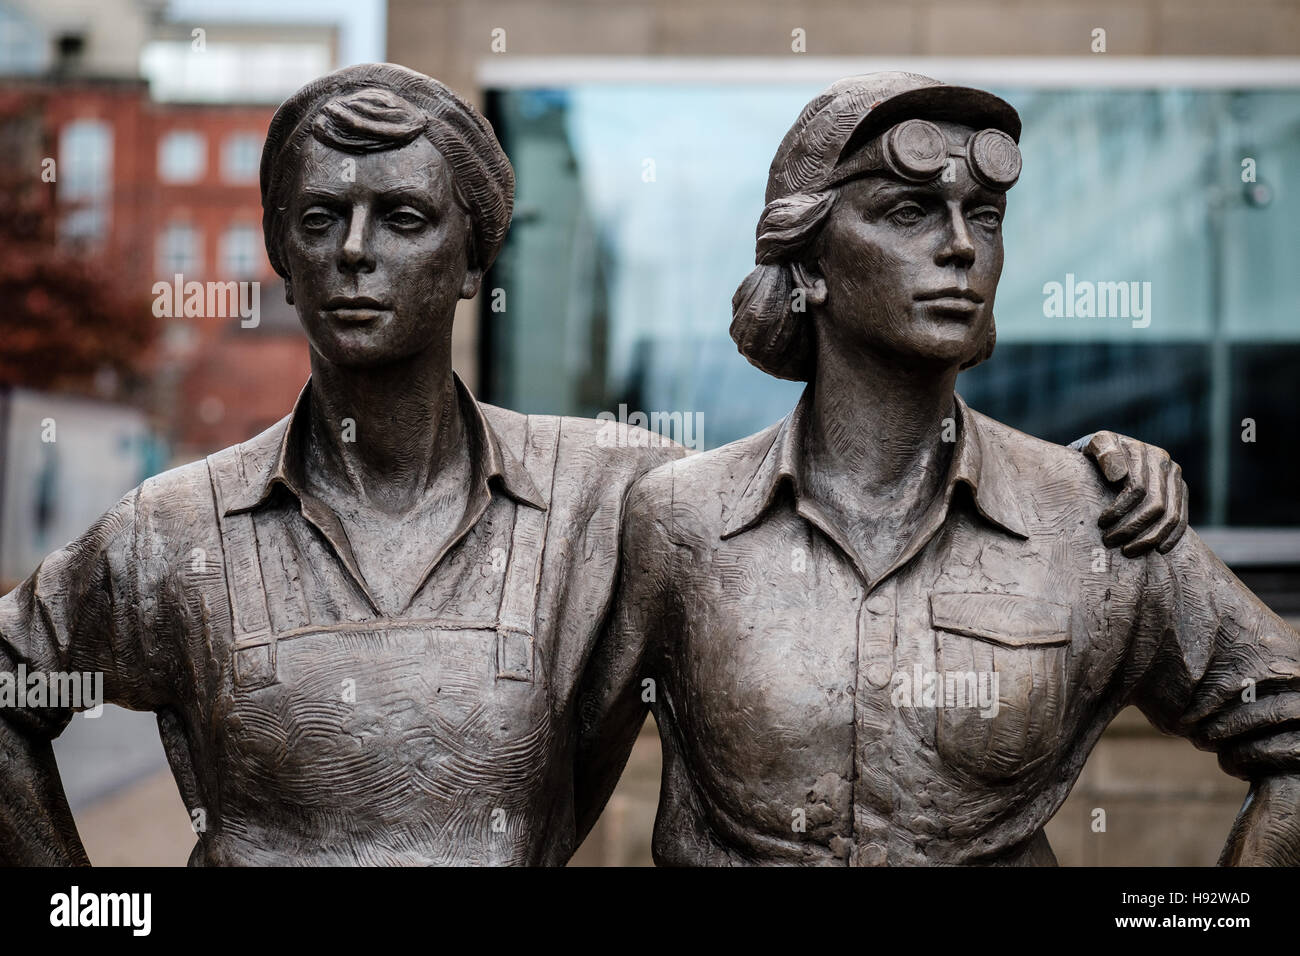 Les femmes d'acier sculpture de bronze dans le centre-ville de Sheffield, par le sculpteur Martin Jennings. Banque D'Images